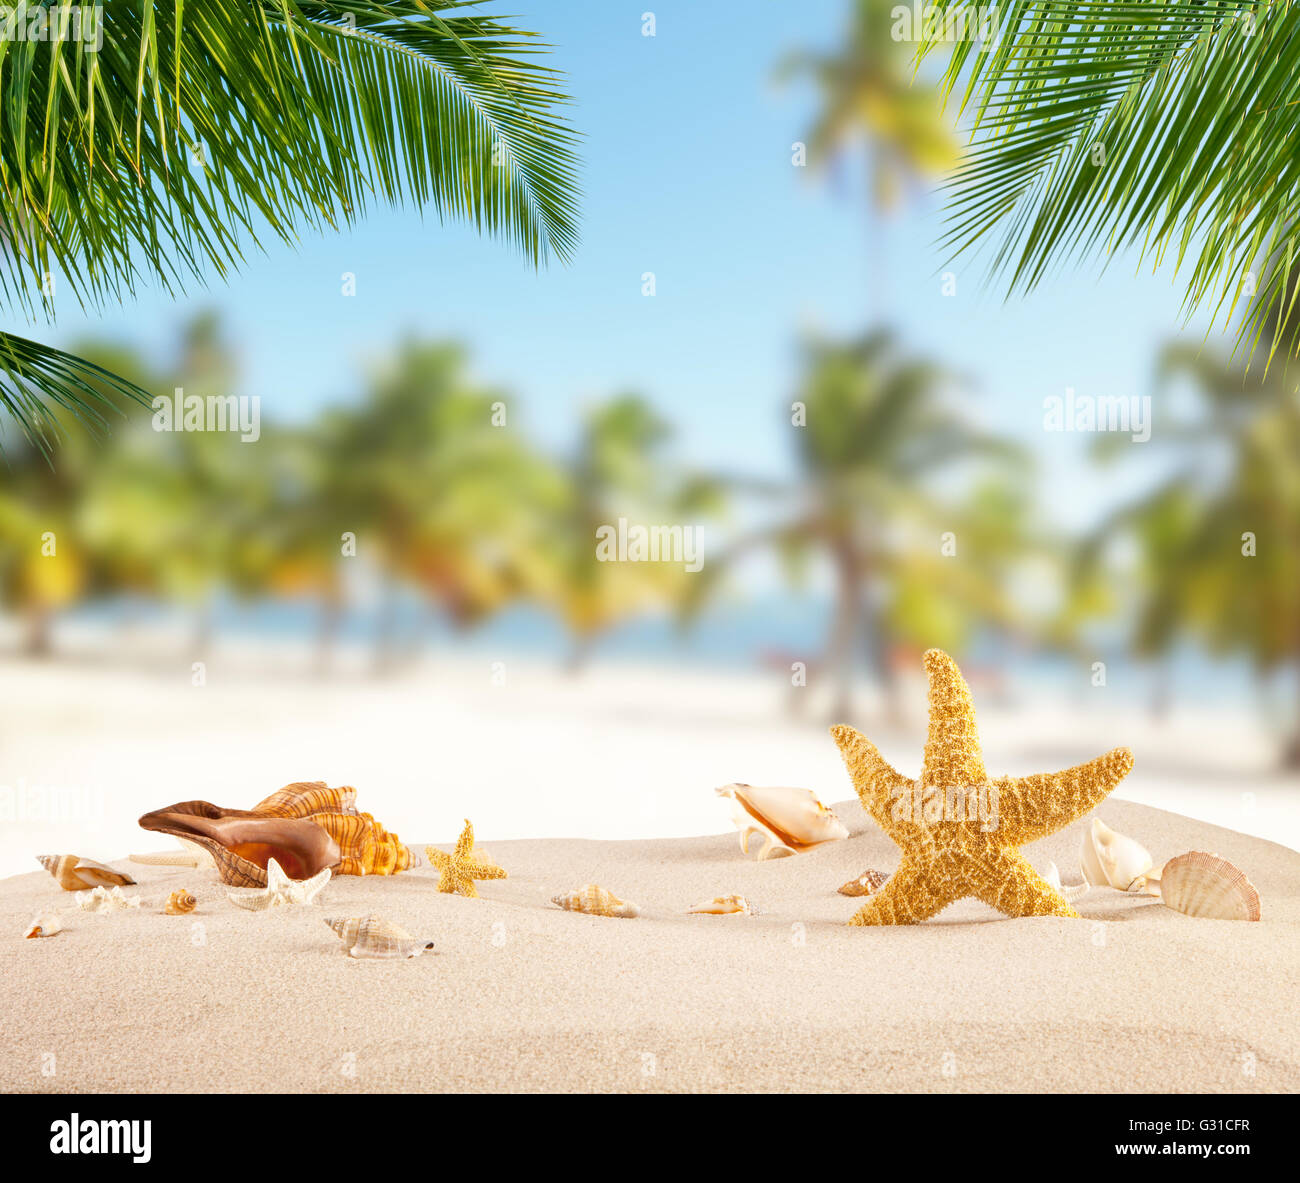 Tropischer Strand mit verschiedenen Muscheln im Sand, Exemplar für Text. Konzept von Sommer-Entspannung Stockfoto